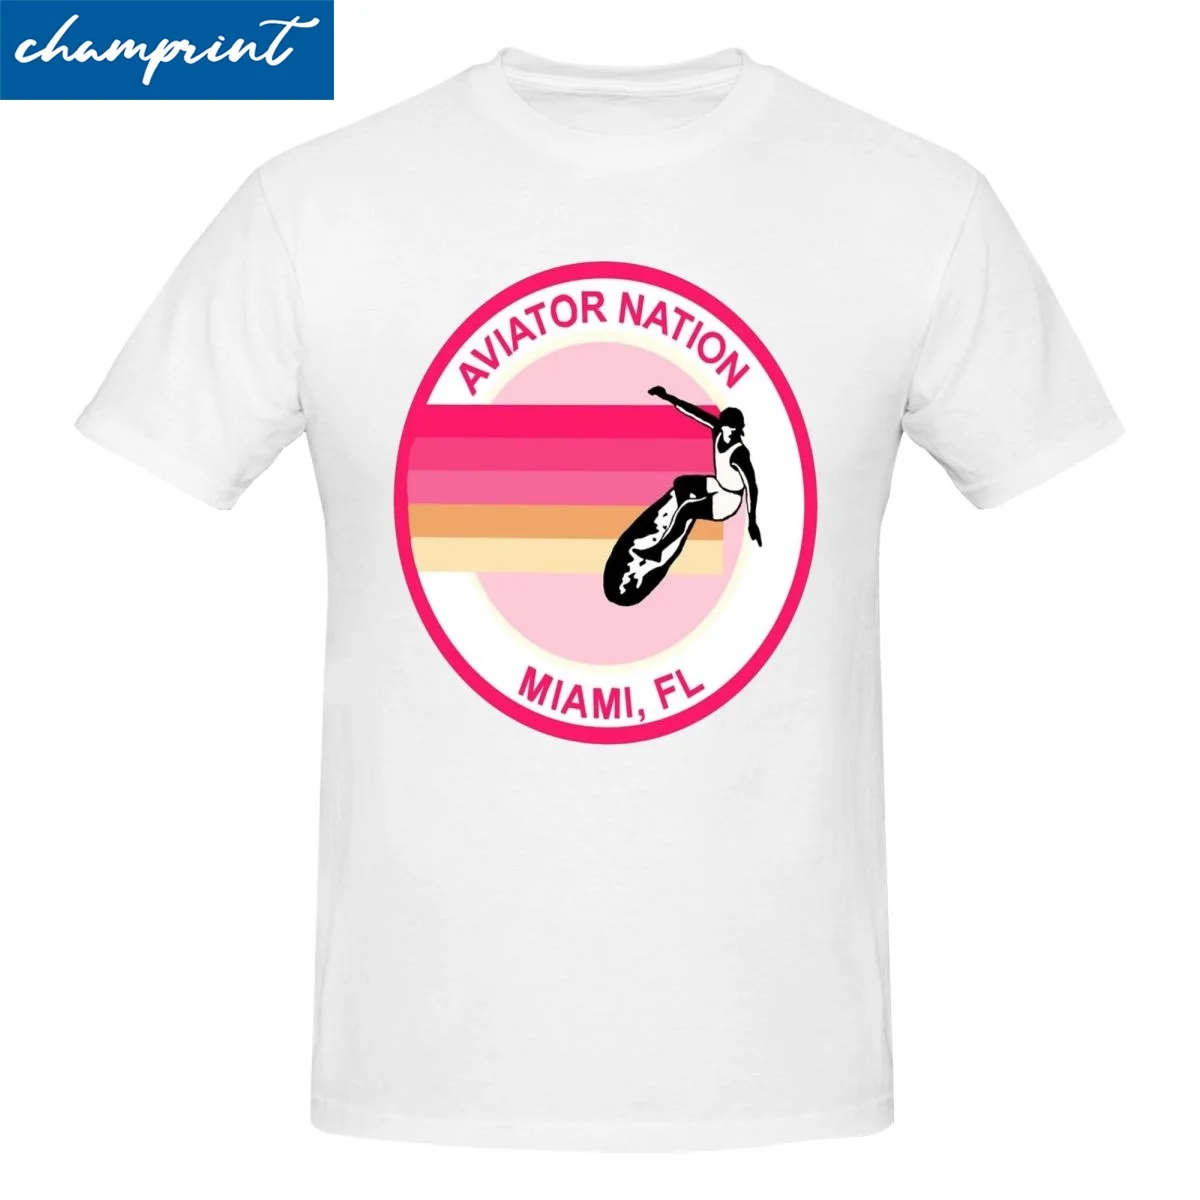 

Футболка Aviator Nation с логотипом для мужчин и женщин, футболки из чистого хлопка, футболка с круглым вырезом, футболка с коротким рукавом, идея для подарка